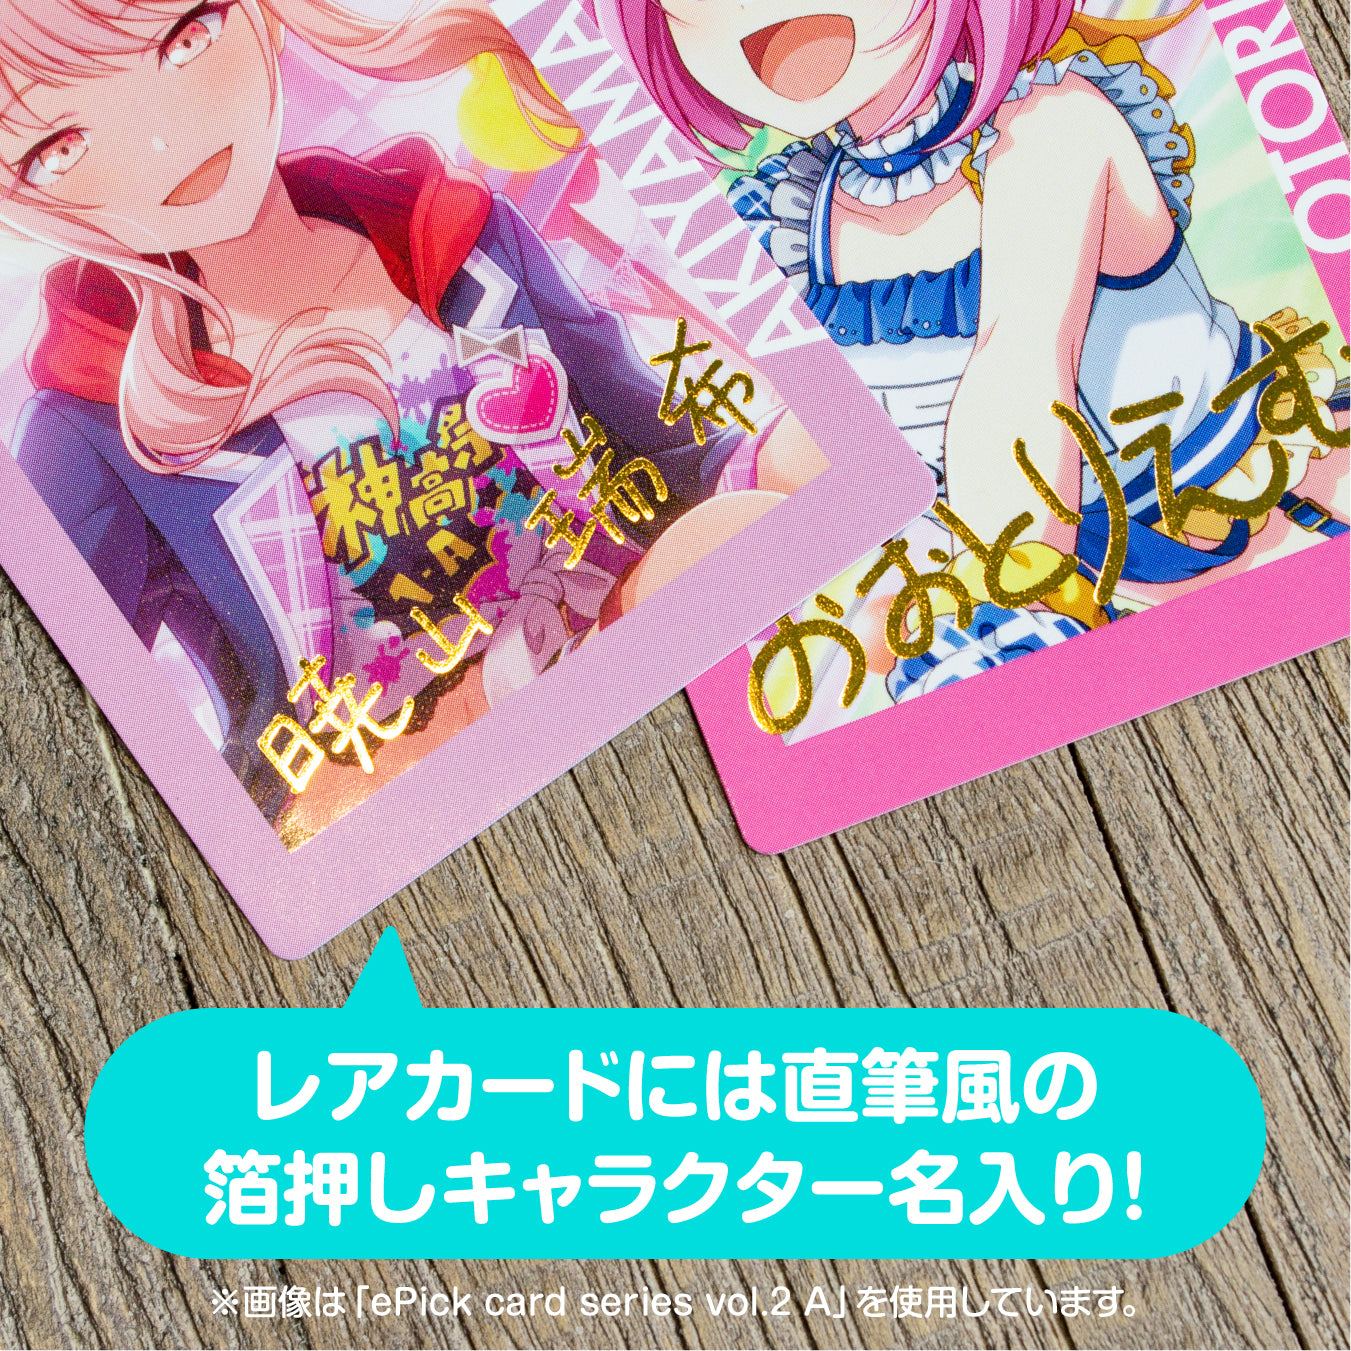 【予約商品】ePick card series vol.2 B